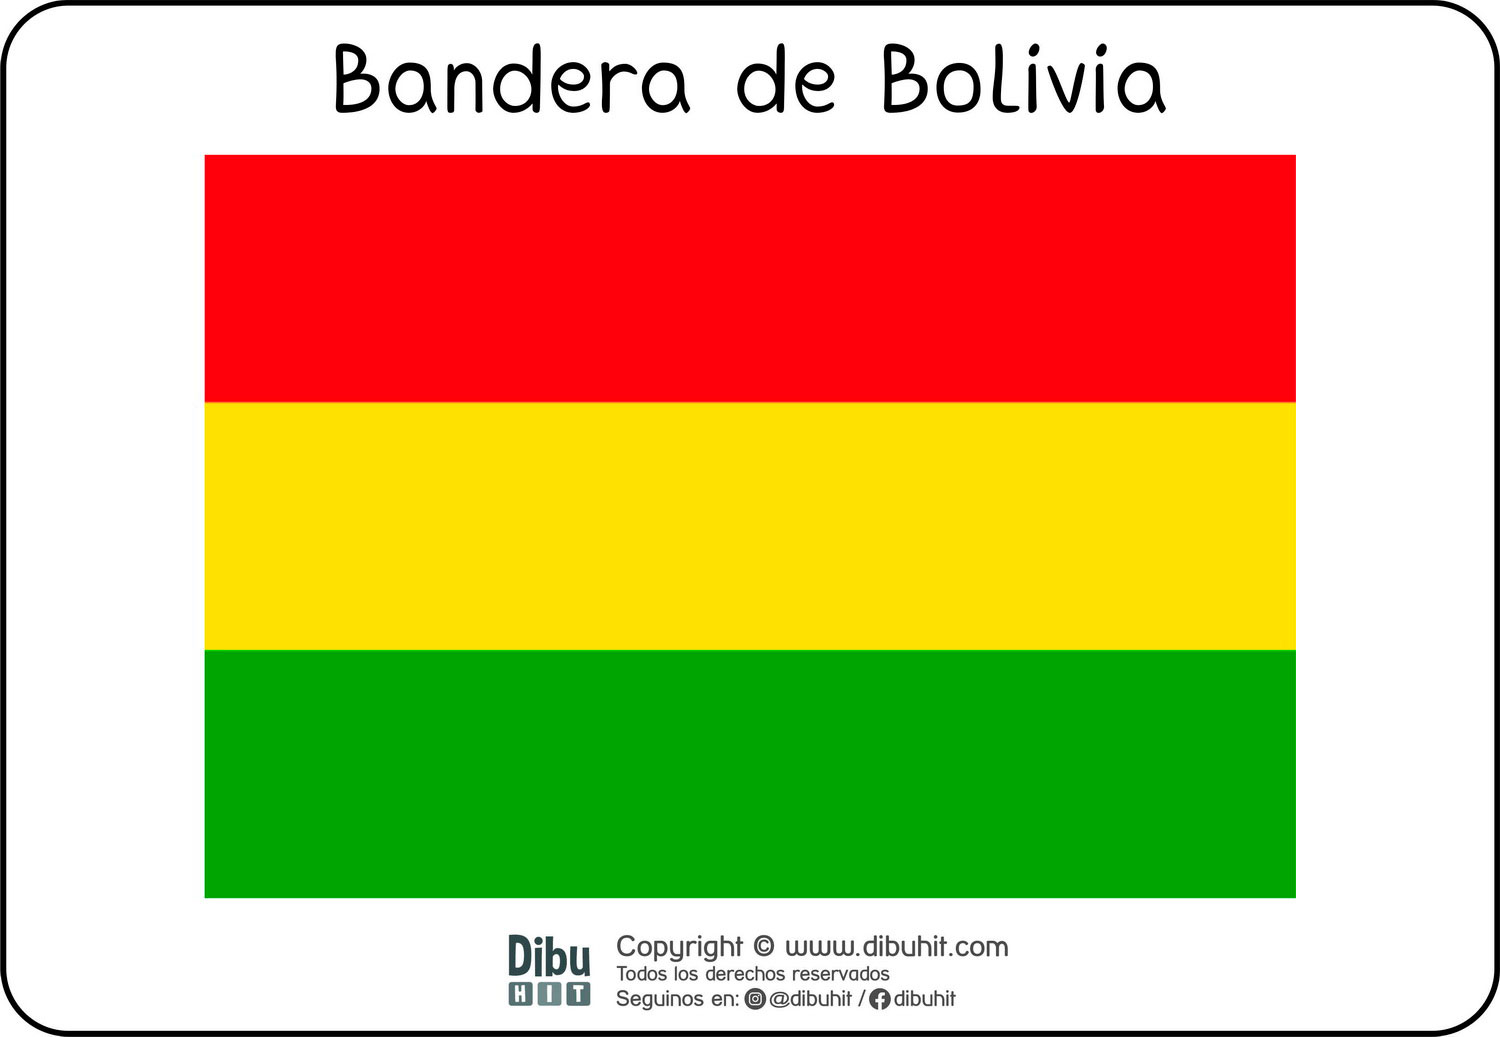 Lamina didactica bandera de Bolivia a colores